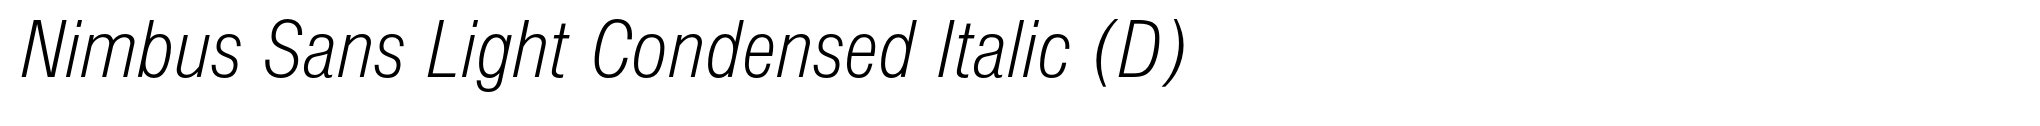 Nimbus Sans Light Condensed Italic (D) image